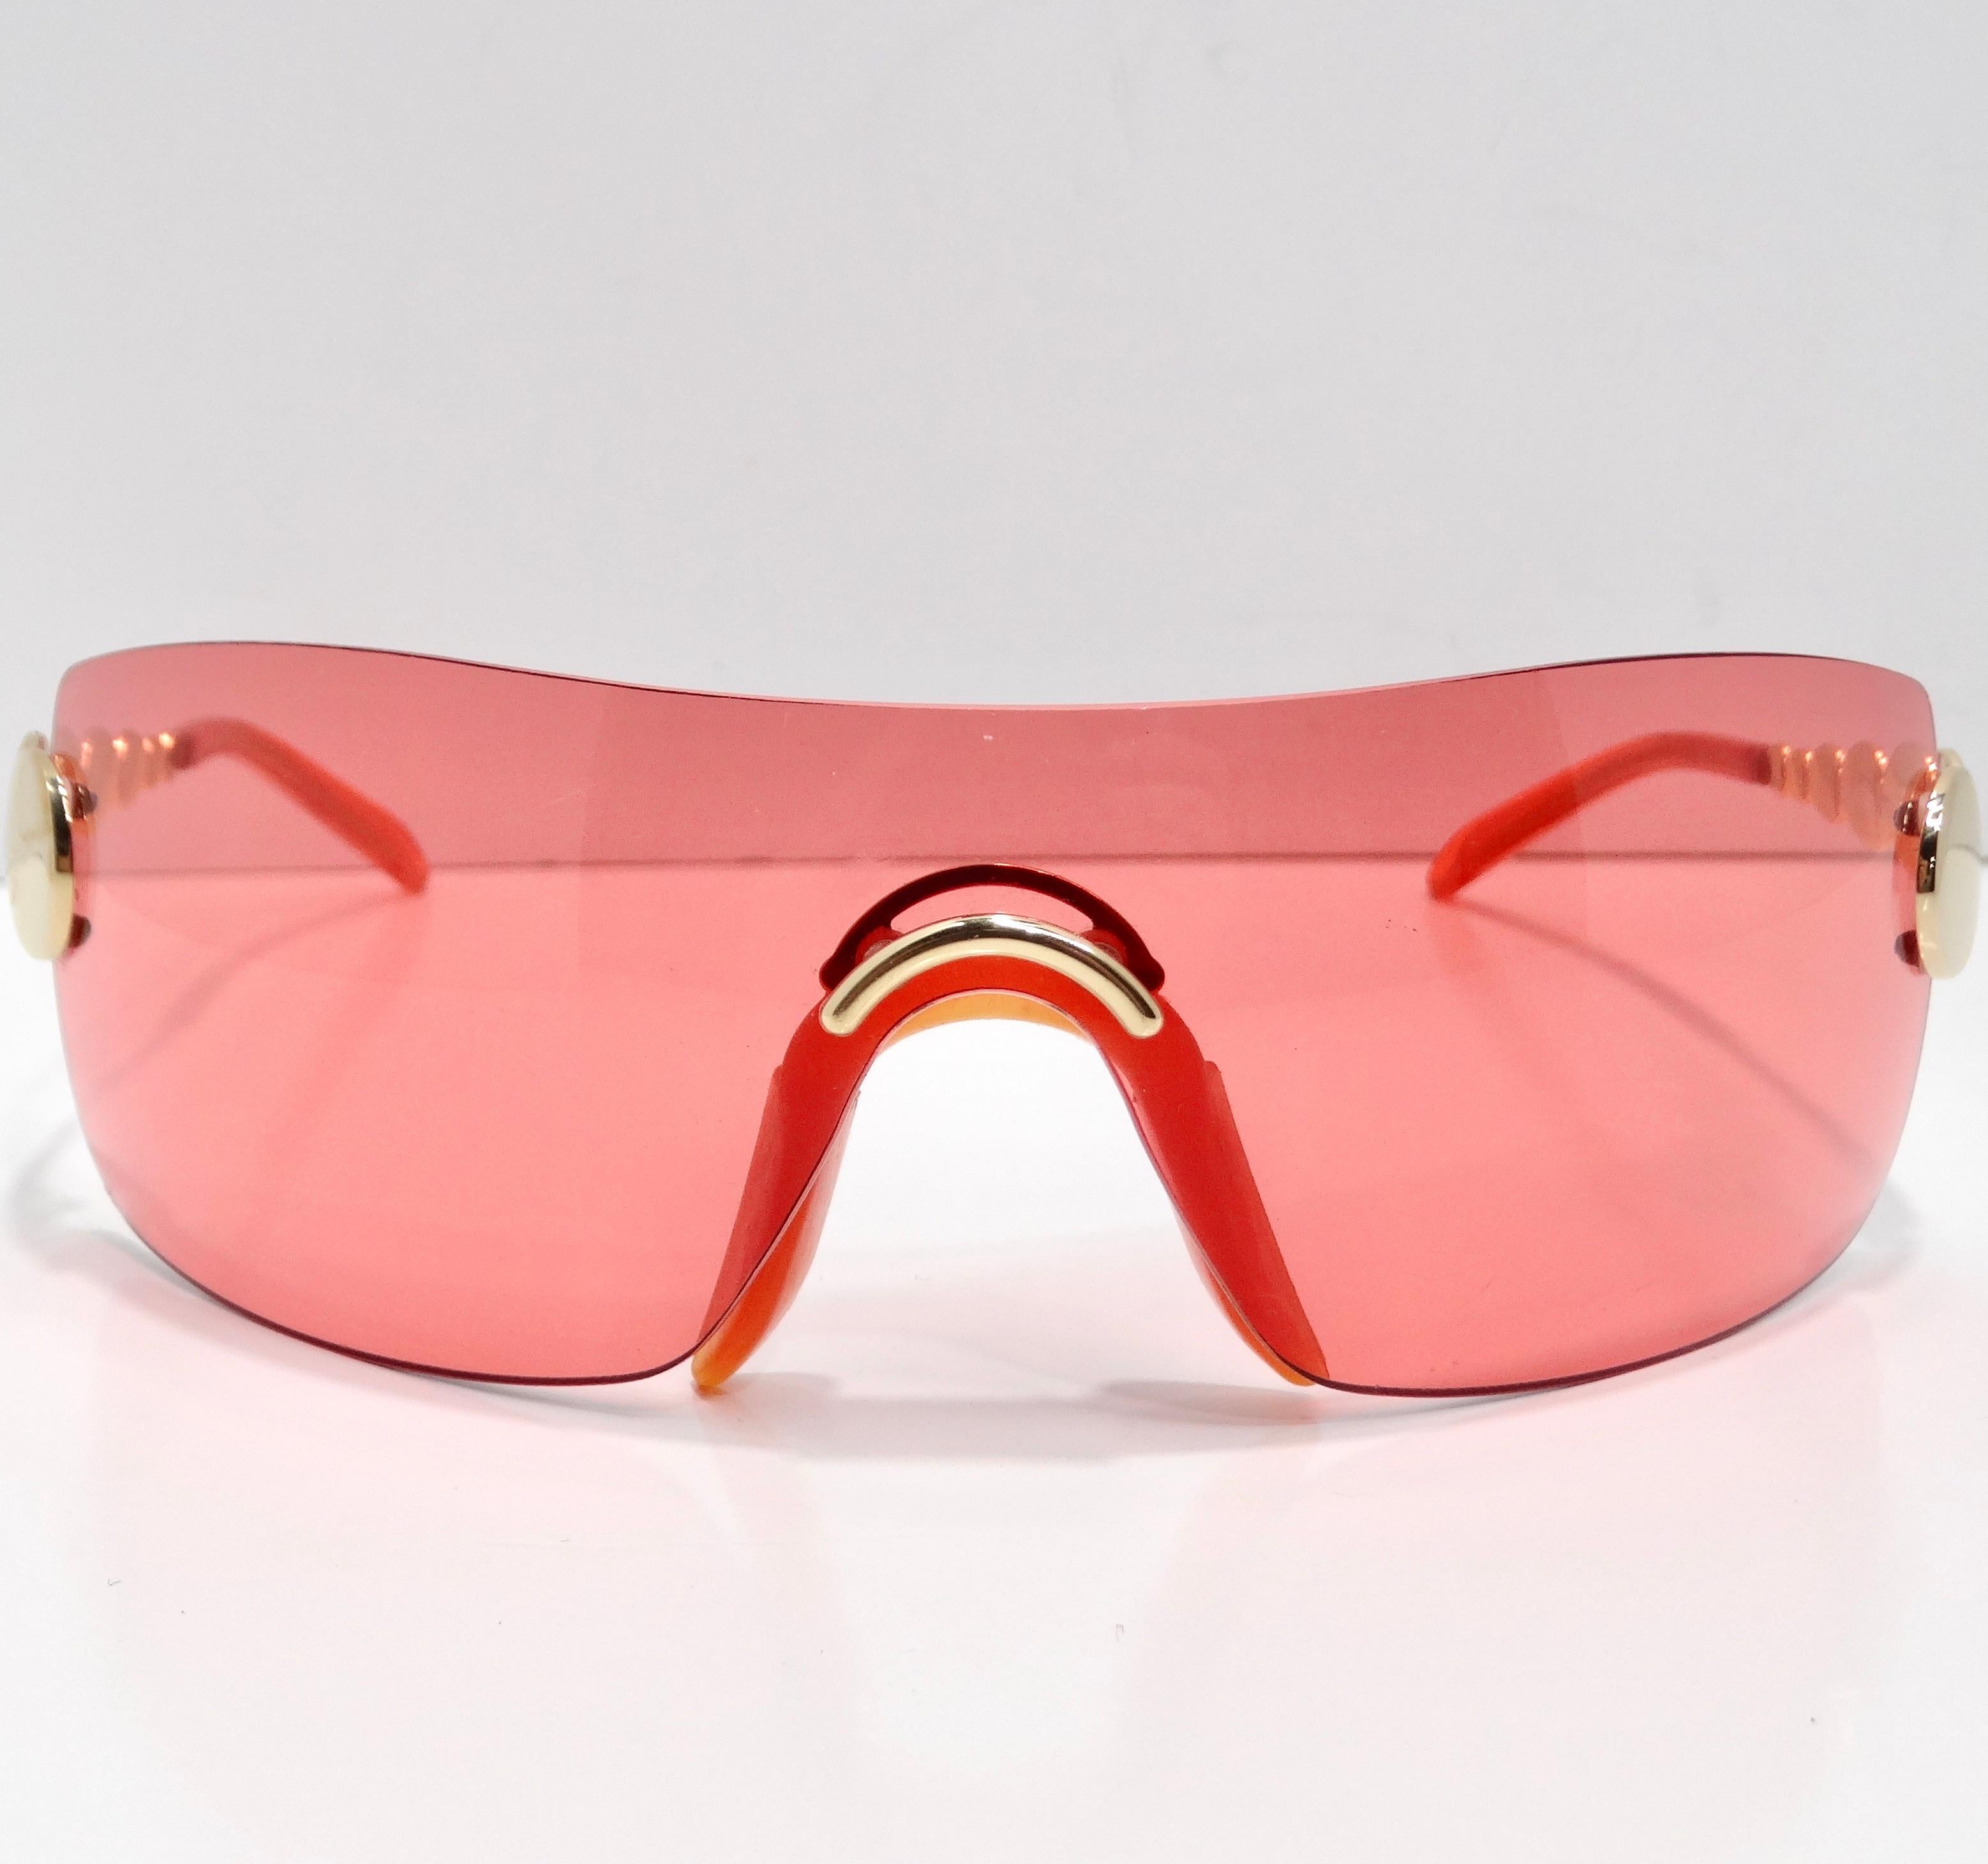 Faites l'expérience d'une élégance inégalée avec les lunettes de soleil Christian Dior Spring 2004 Galliano Red Mask, une fusion étonnante de design avant-gardiste et de sophistication intemporelle. Ces lunettes de soleil extraordinaires, de type